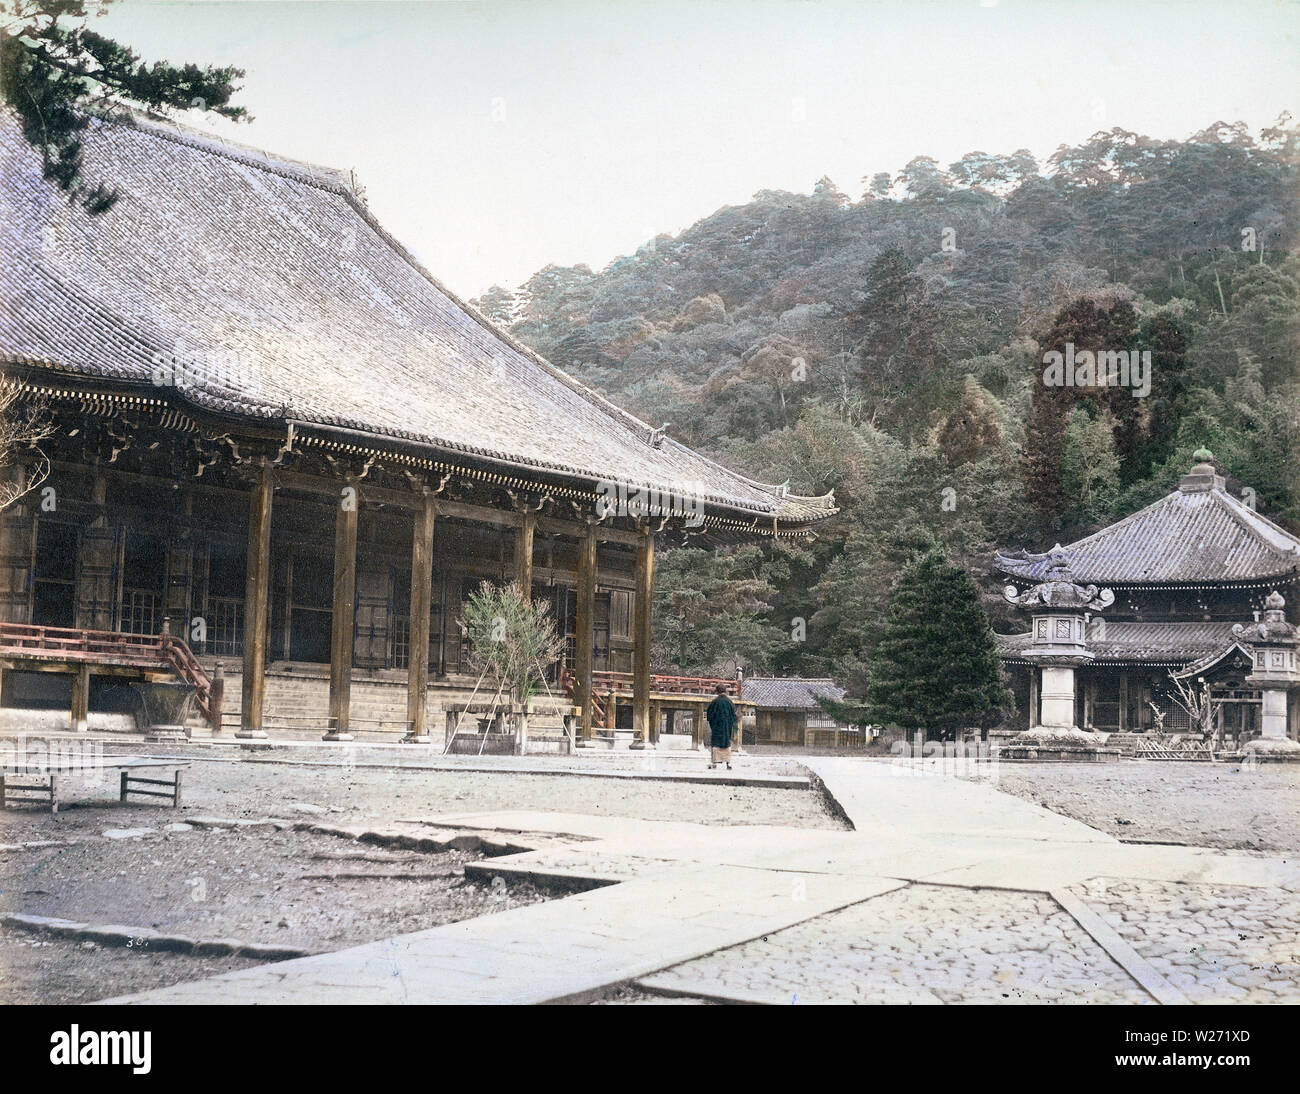 [ 1880 Japon - Temple de Chion-in, Kyoto ] - Temple de Chion-in dans Higashiyama-ku, Kyoto, ca. Années 1880. Le temple est le siège de la Terre Pure (Jōdo Shū) secte fondée par Hounen (1133-1212). Le temple original a été construit en 1234. Il a été détruit et reconstruit plusieurs fois. 19e siècle vintage albumen photo. Banque D'Images